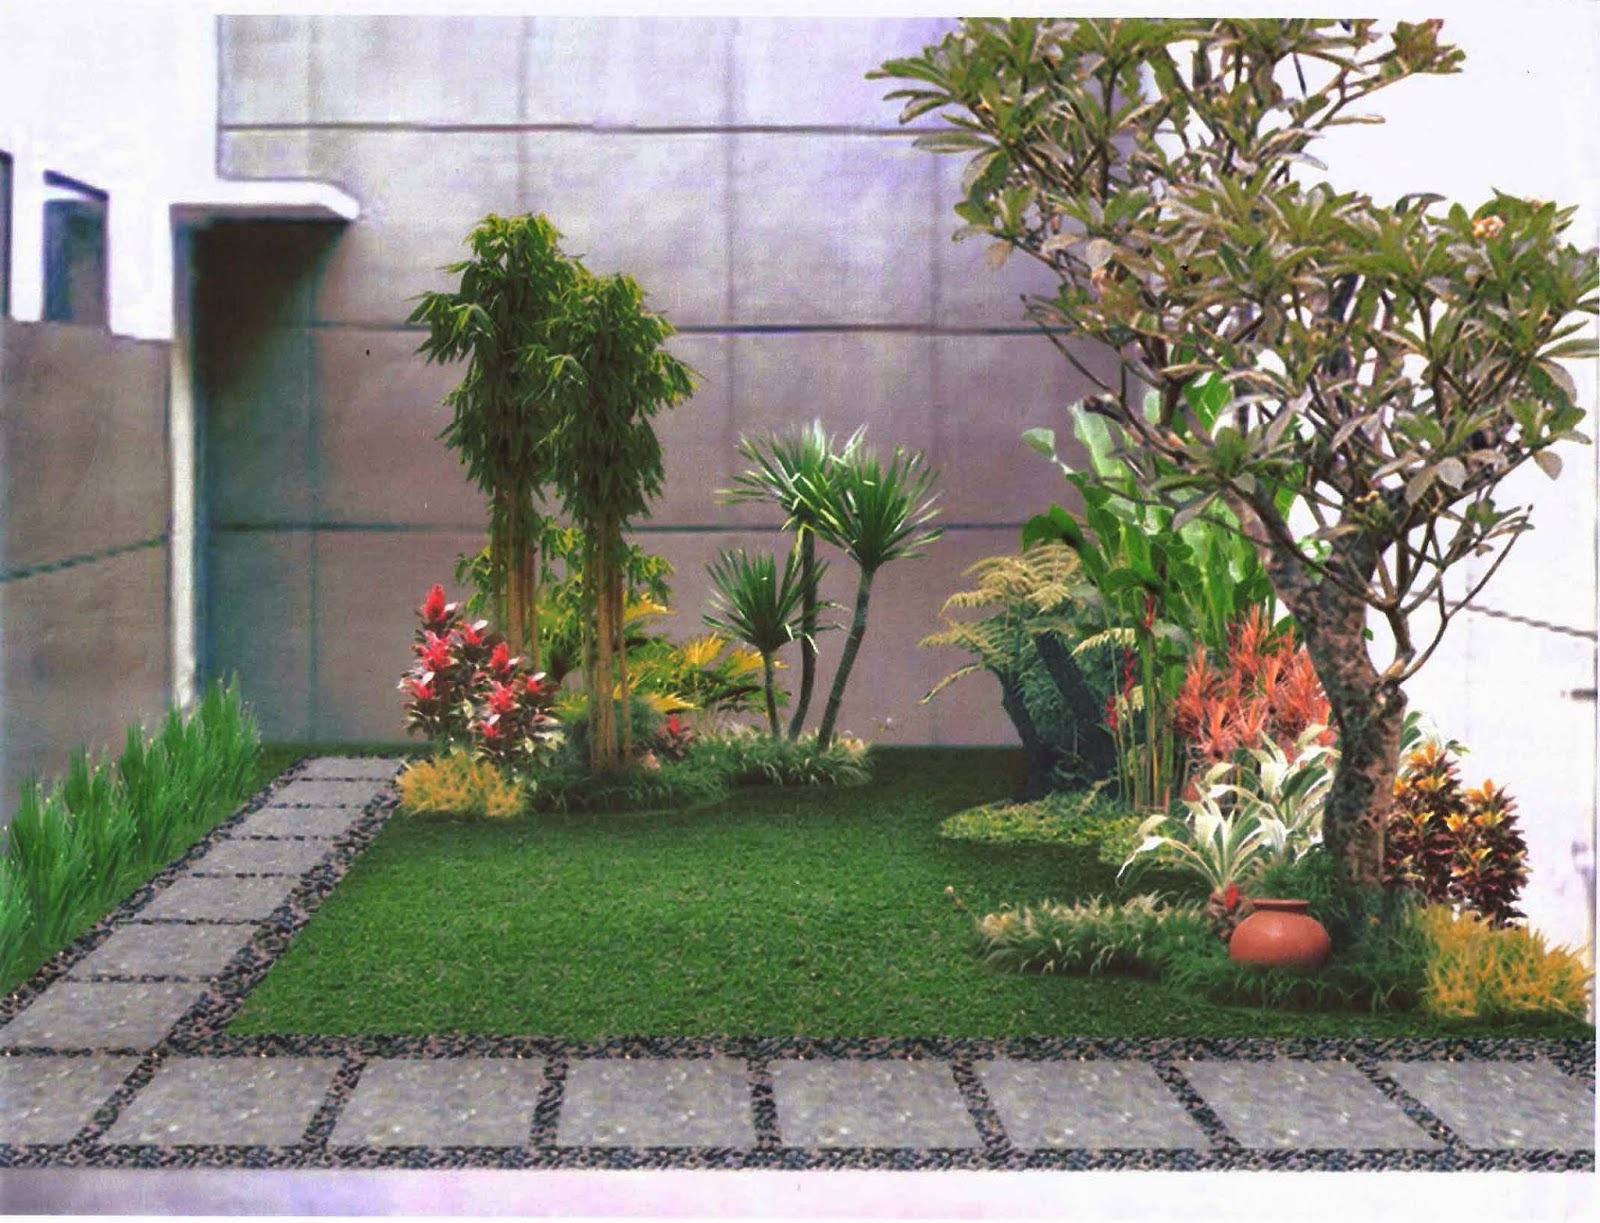 Gambar Desain Taman Depan Rumah Yang Minimalis Desain Rumah Idaman Minimalis